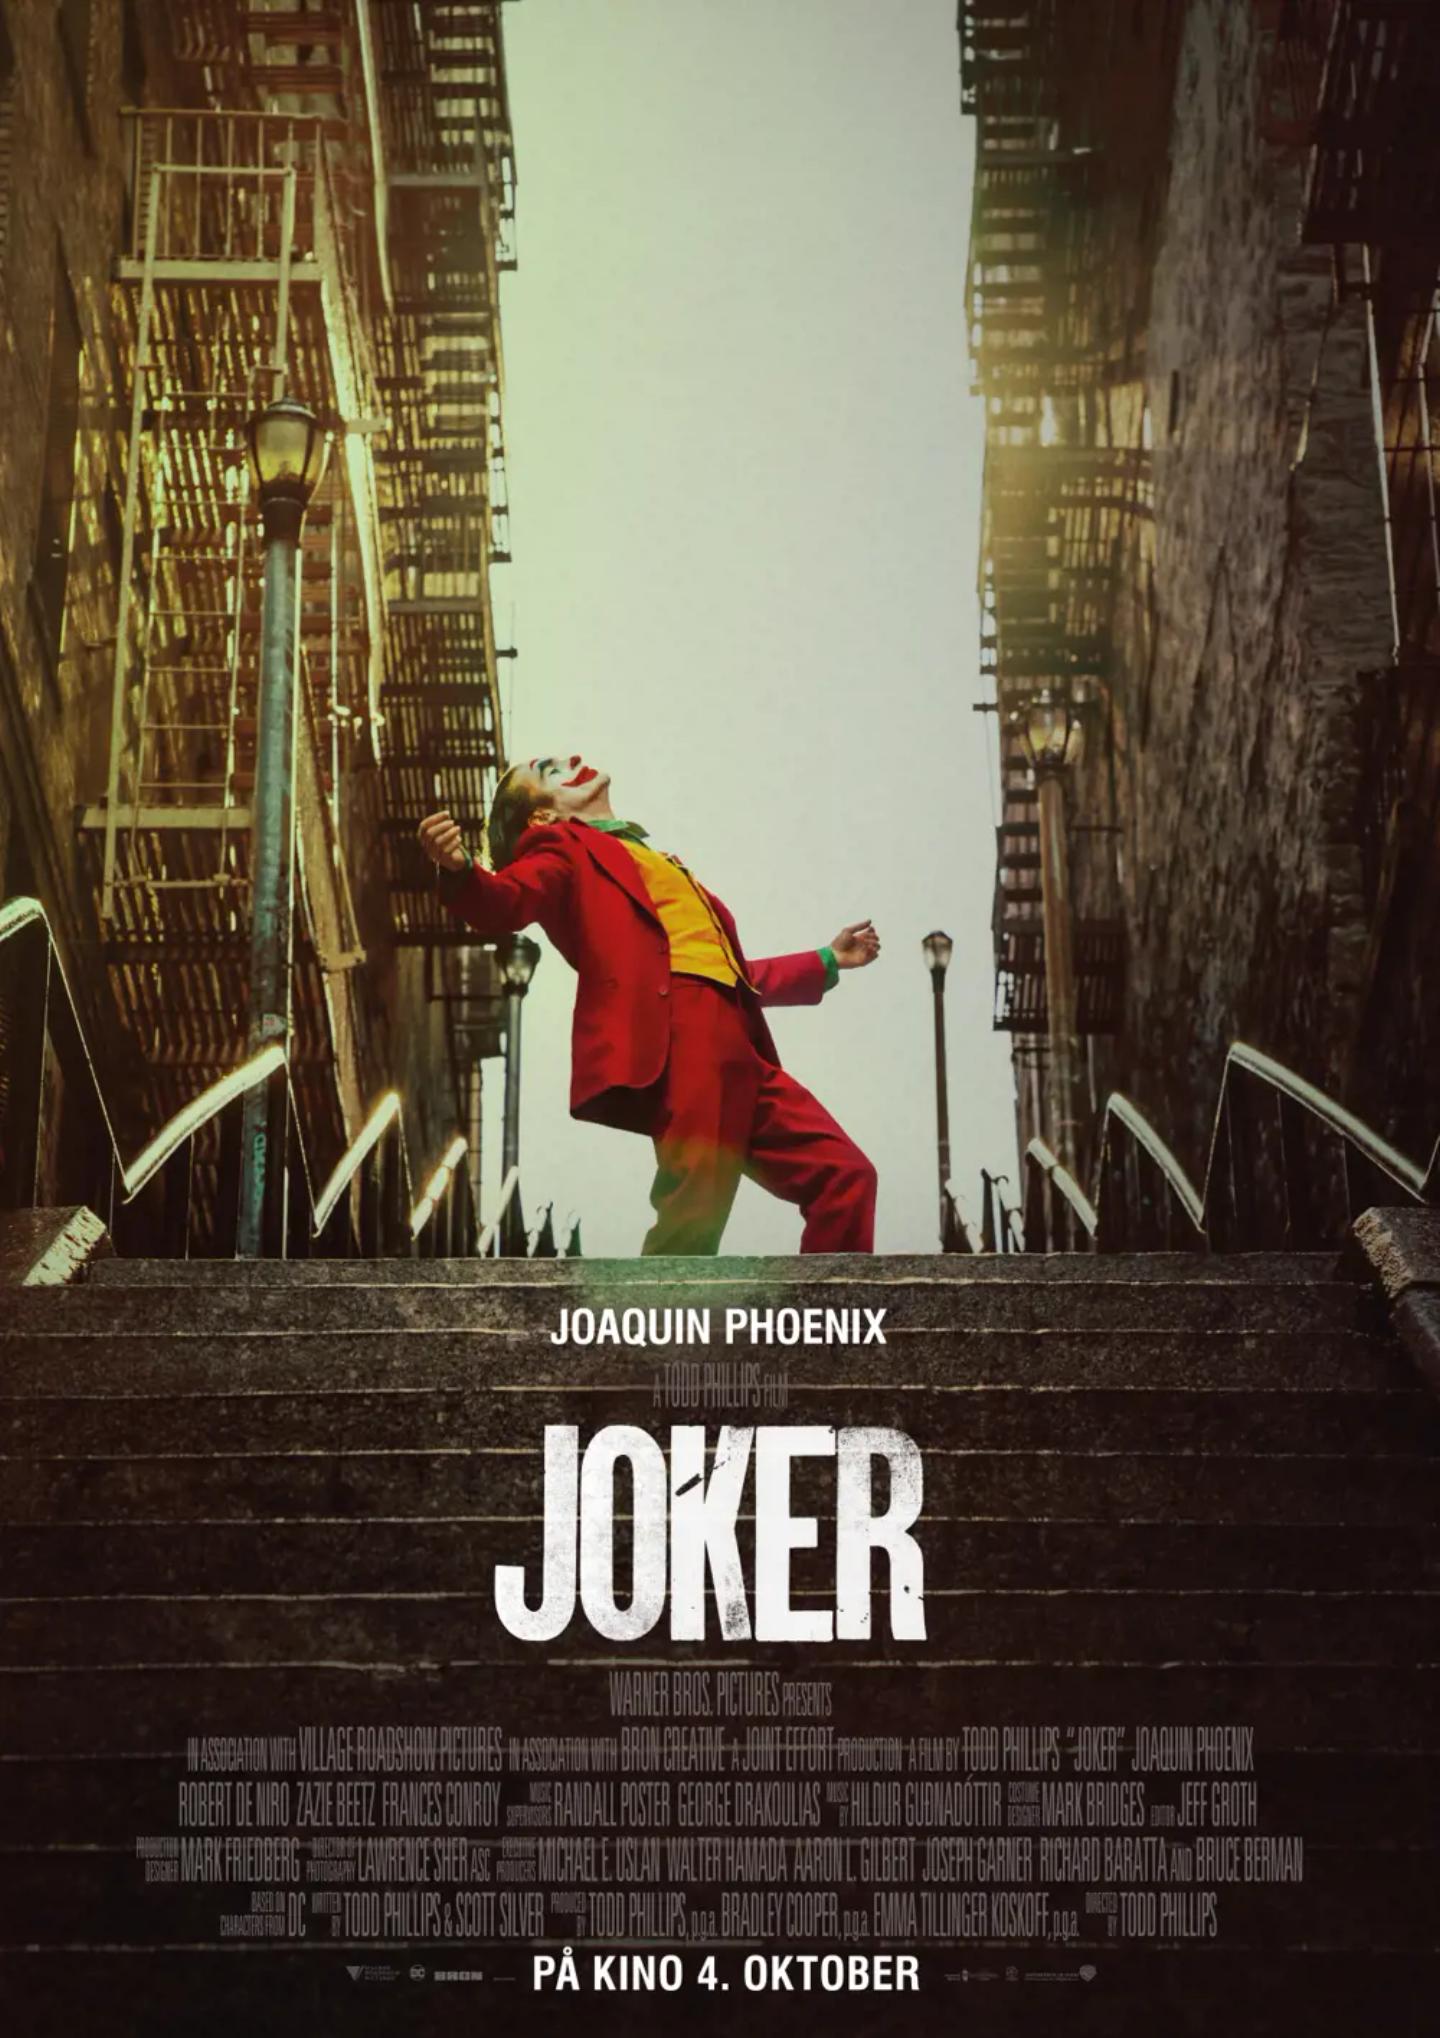 Plakat for 'Joker'